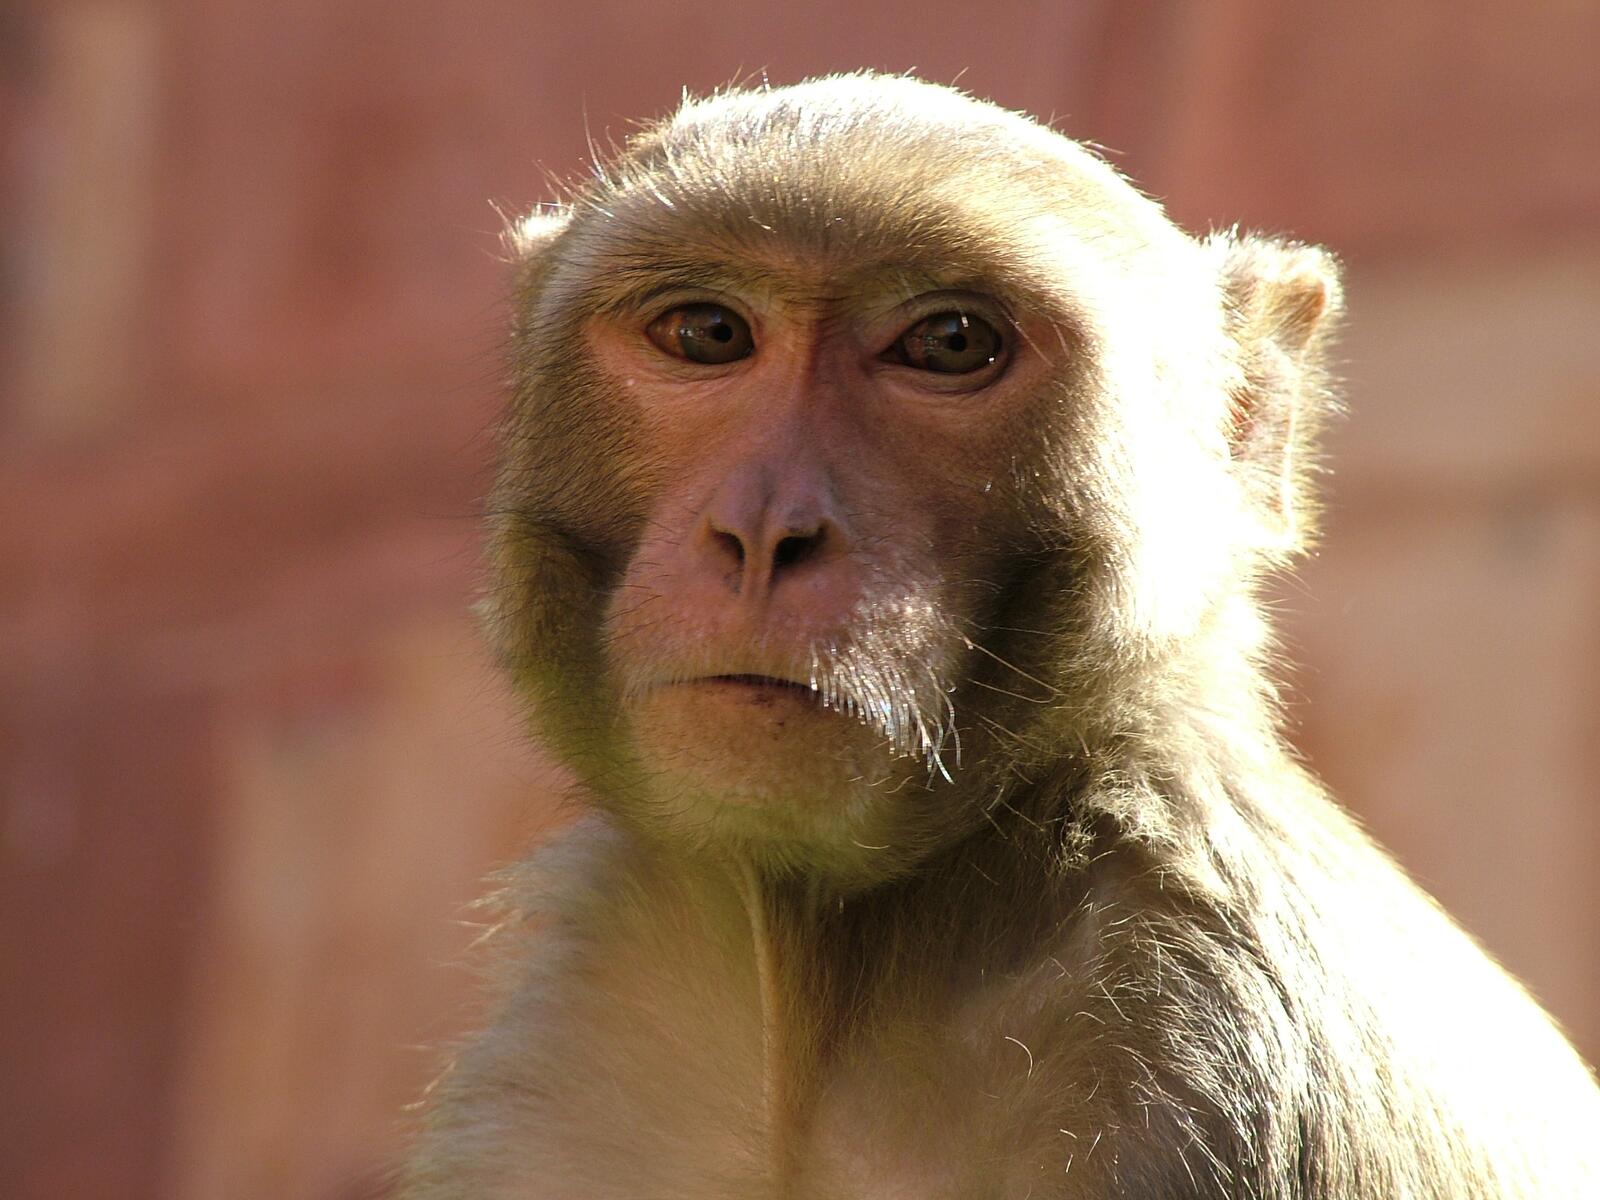 Free photo A portrait of a monkey